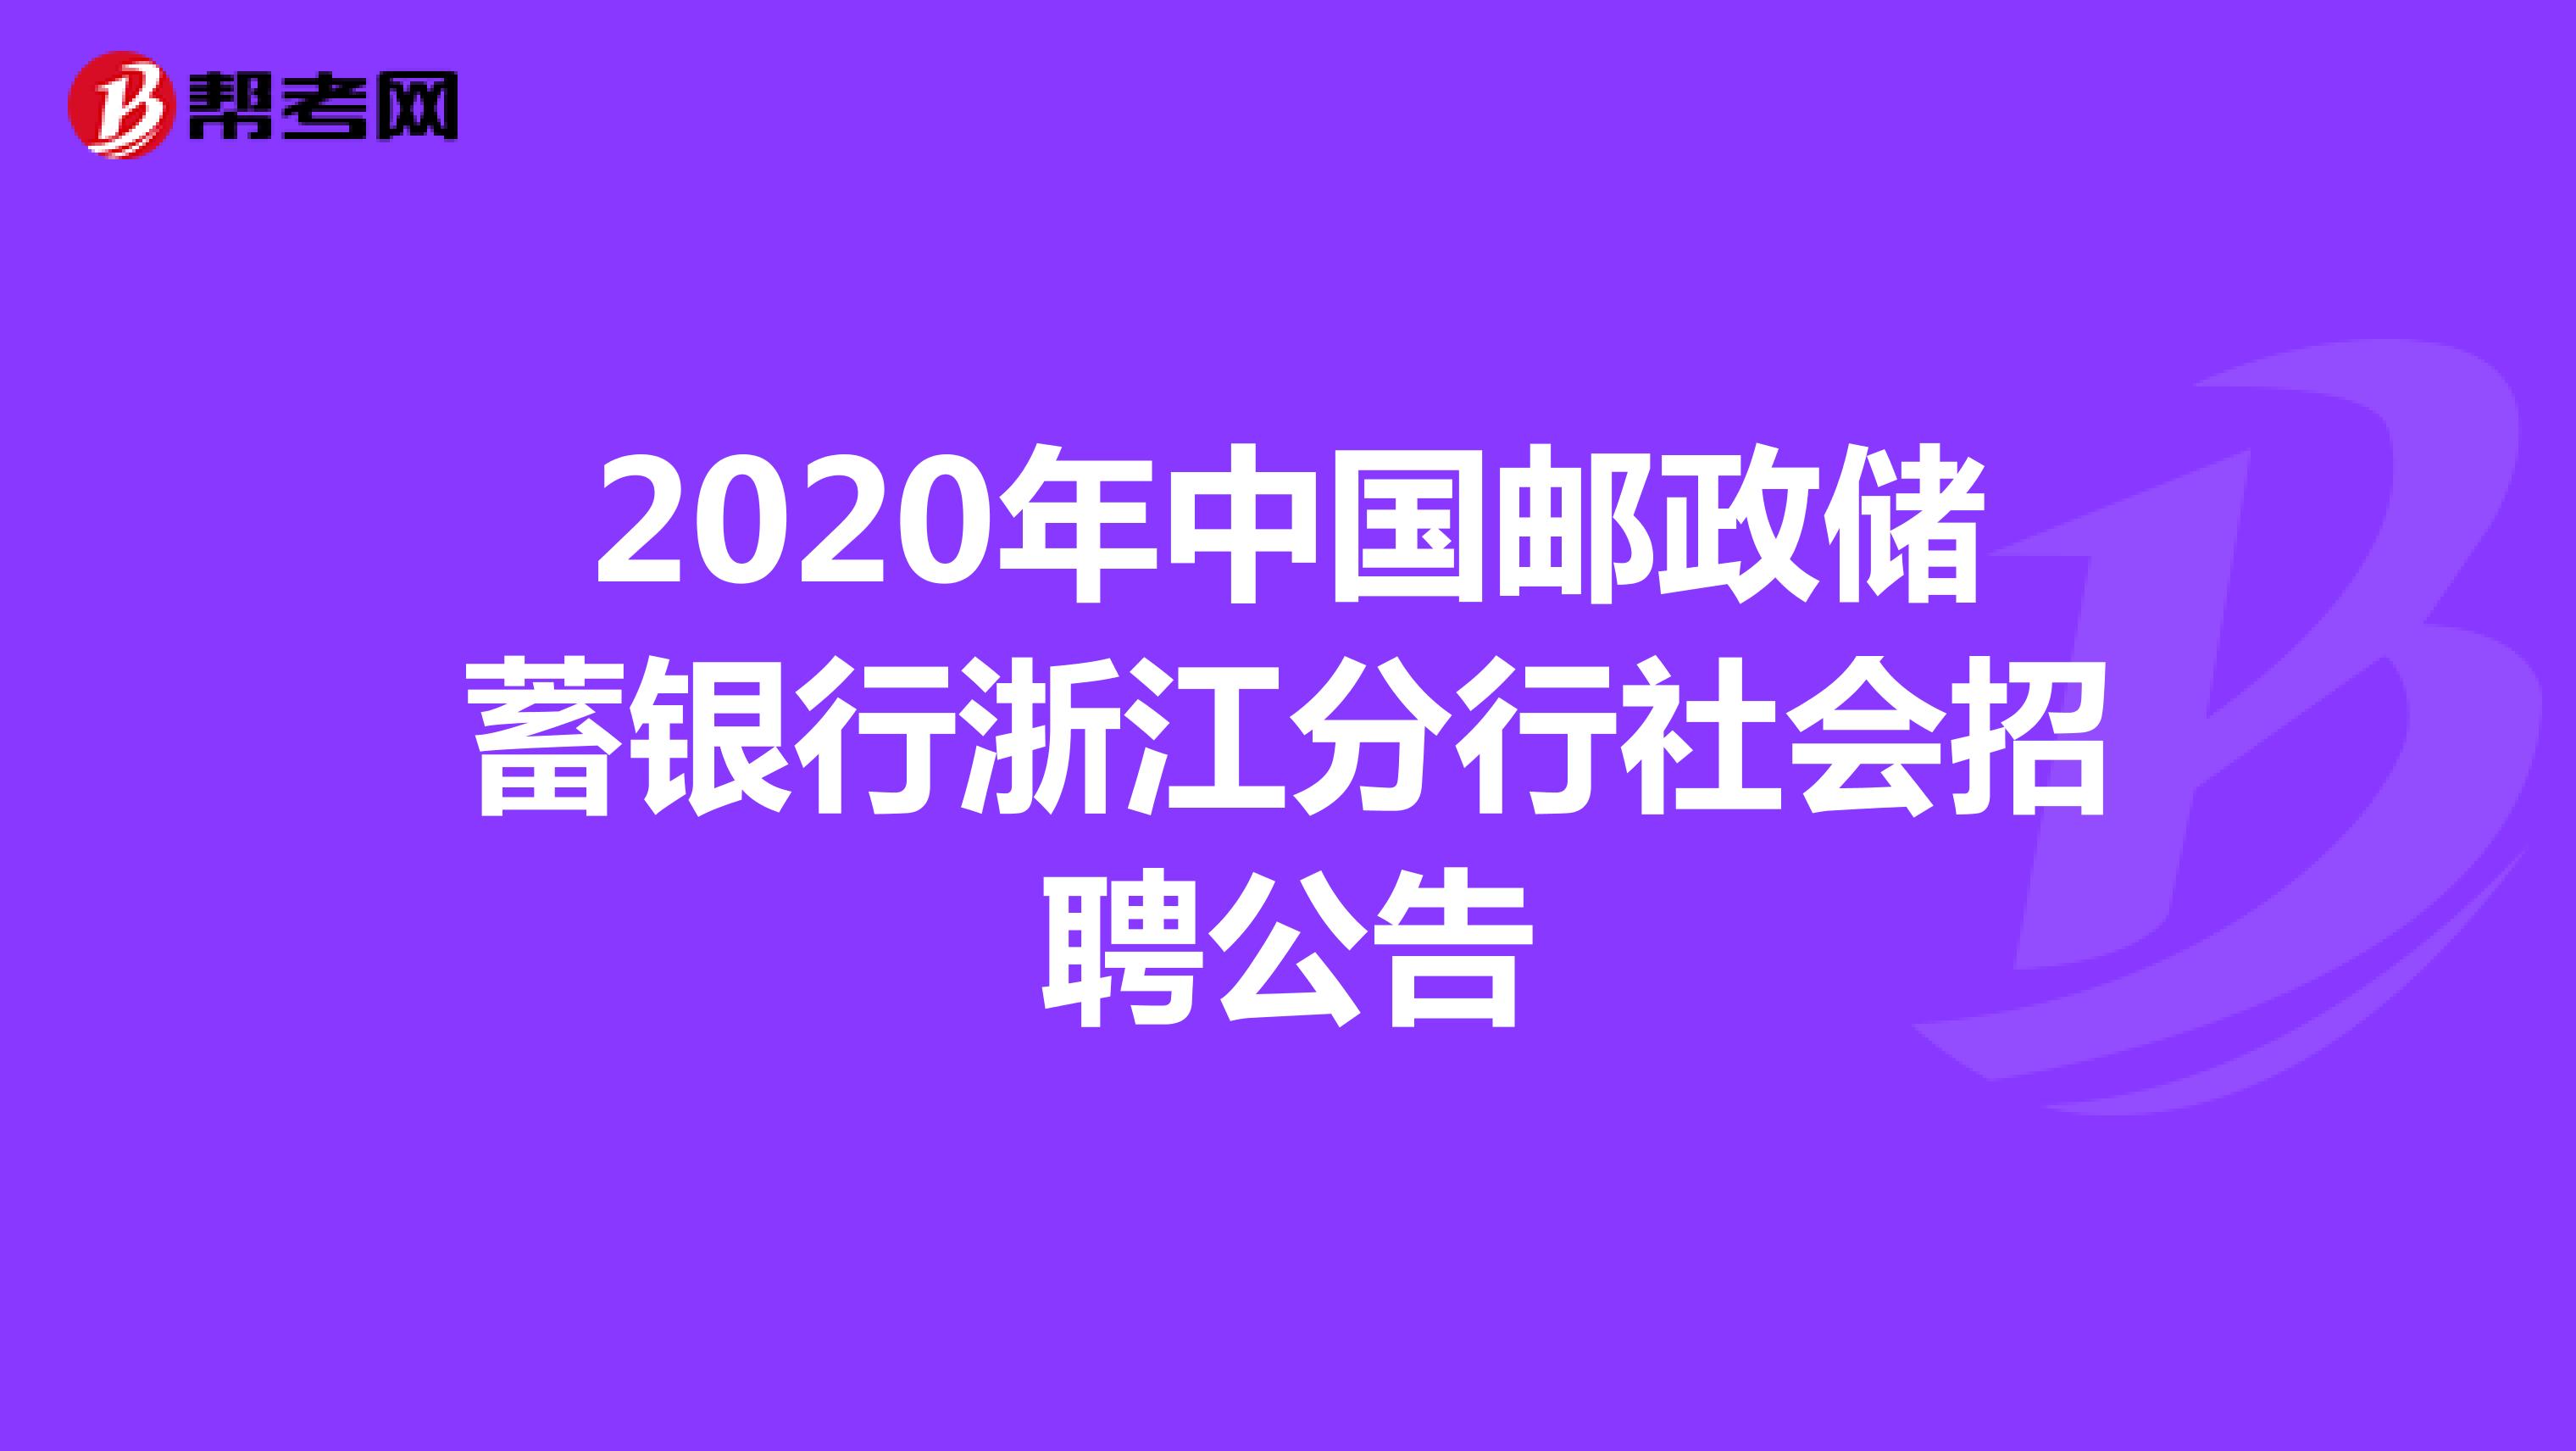 2020年中国邮政储蓄银行浙江分行社会招聘公告 